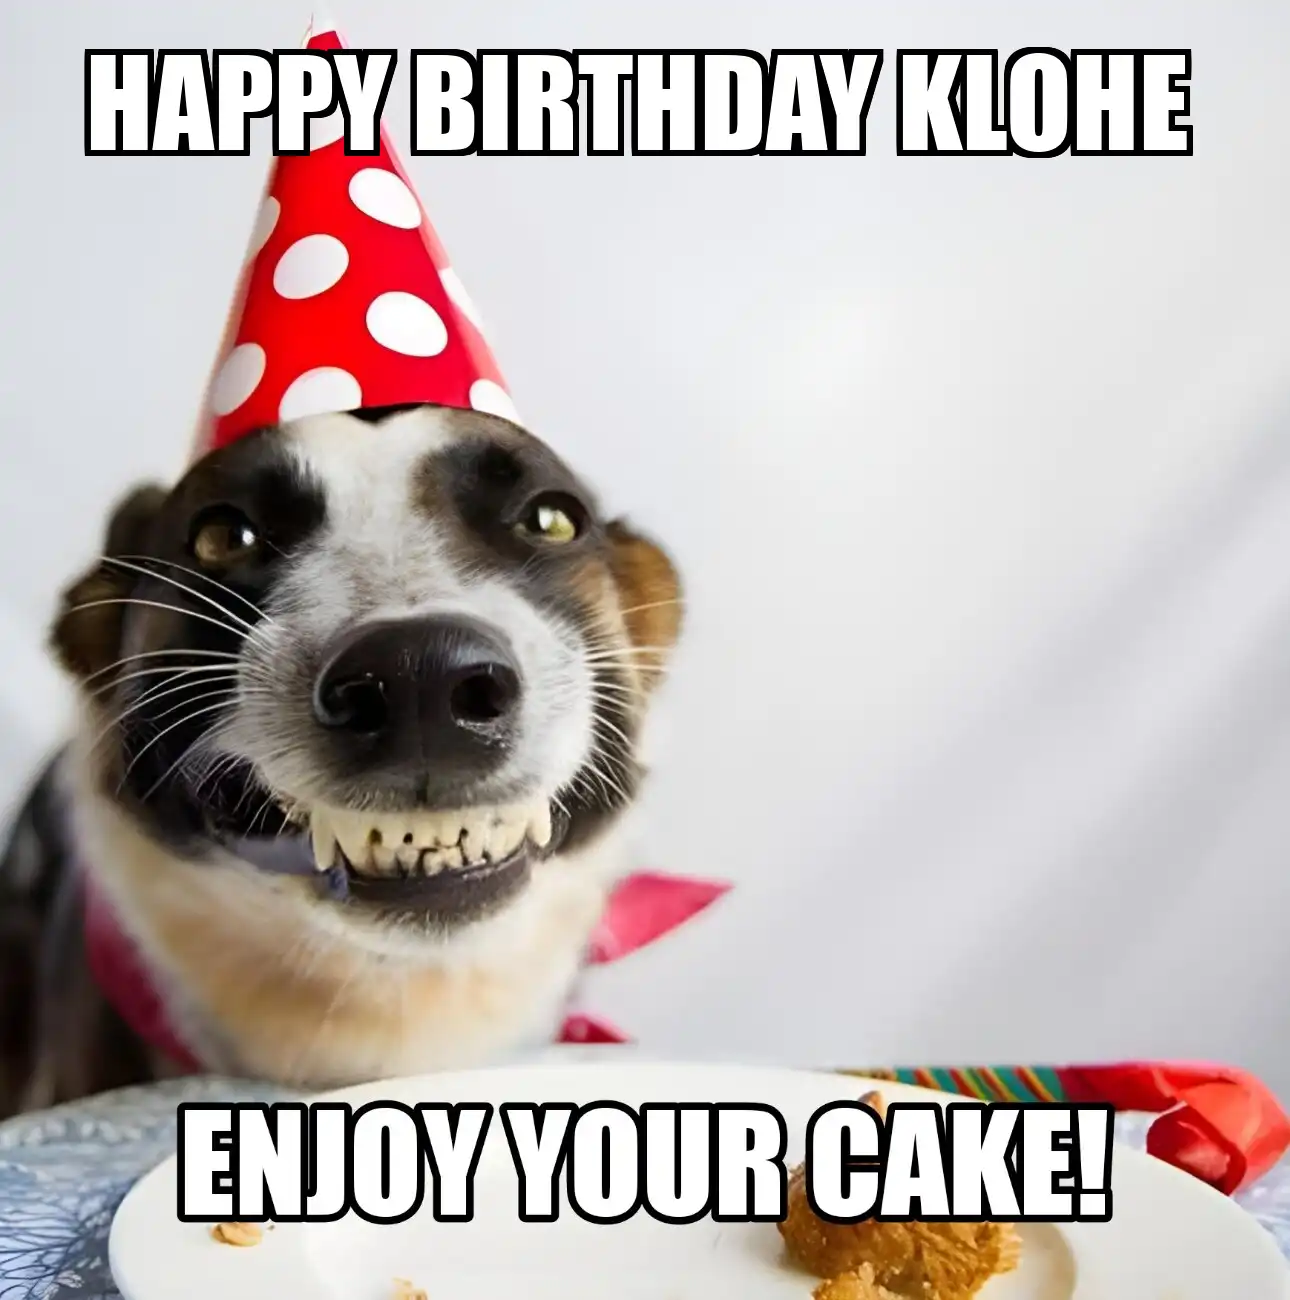 Happy Birthday Klohe Enjoy Your Cake Dog Meme